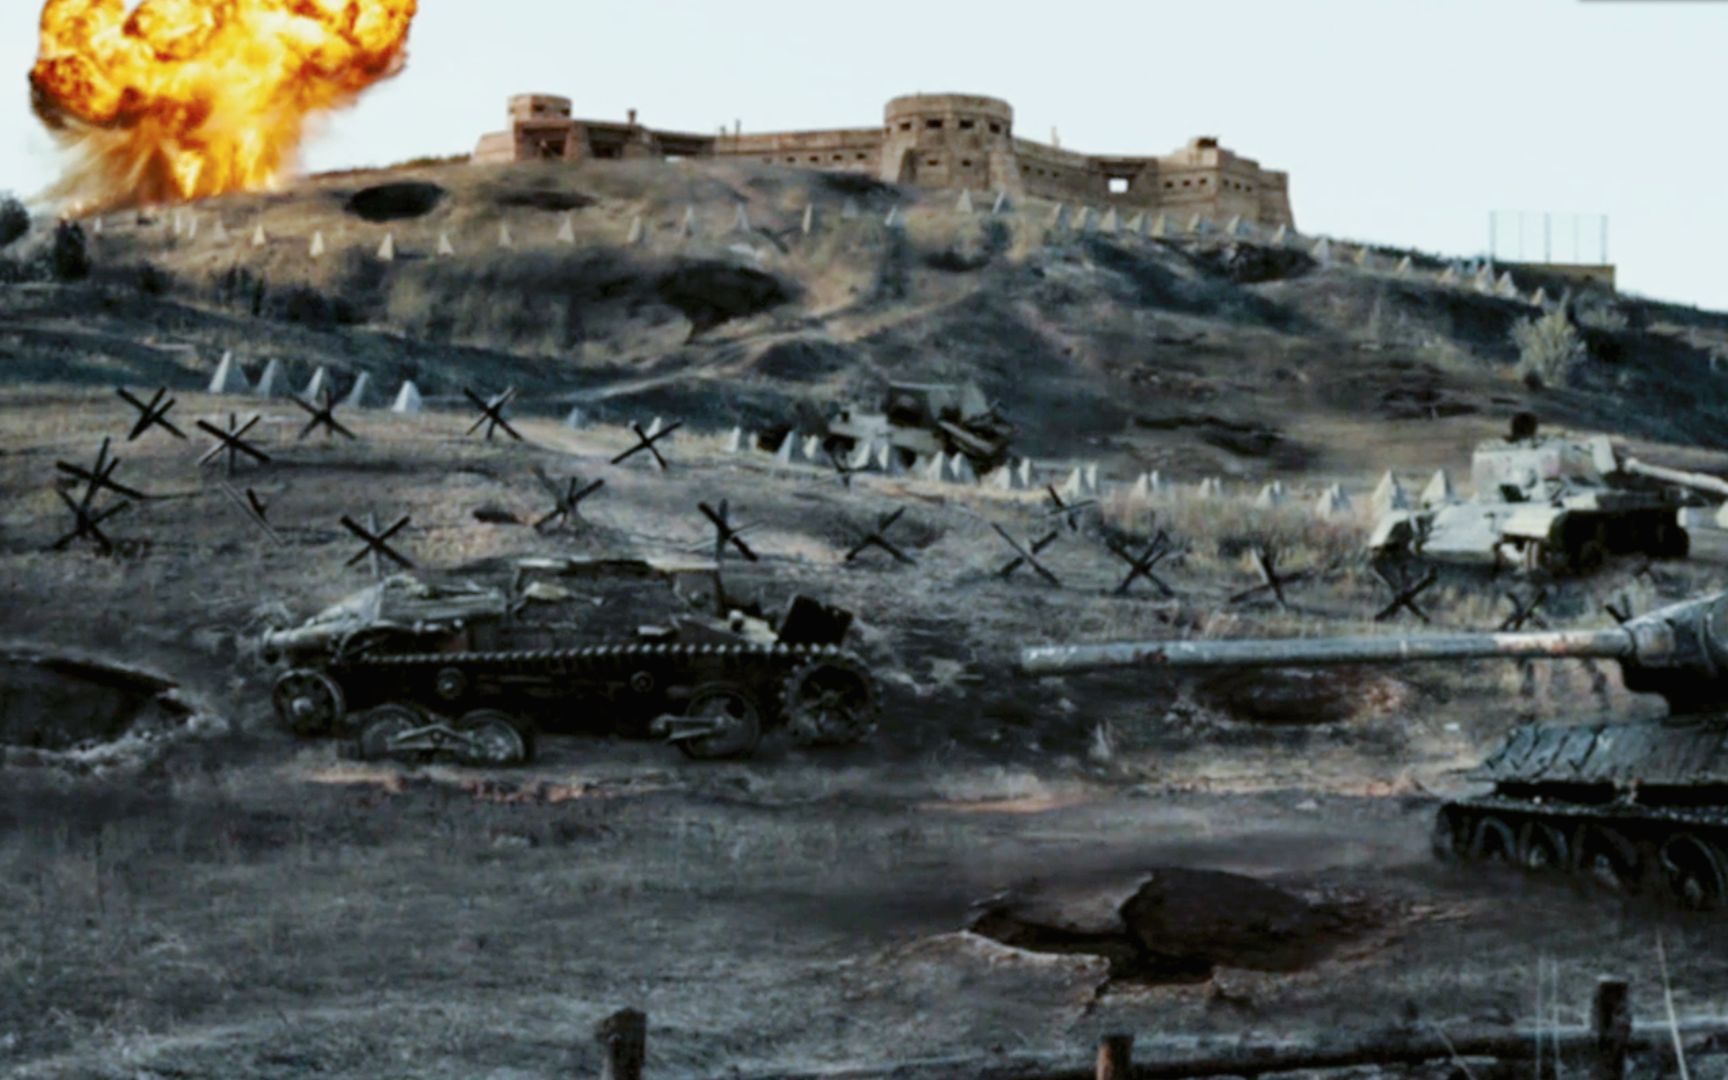 二战电影:烈日灼人之碉堡要塞,德军一败涂地!